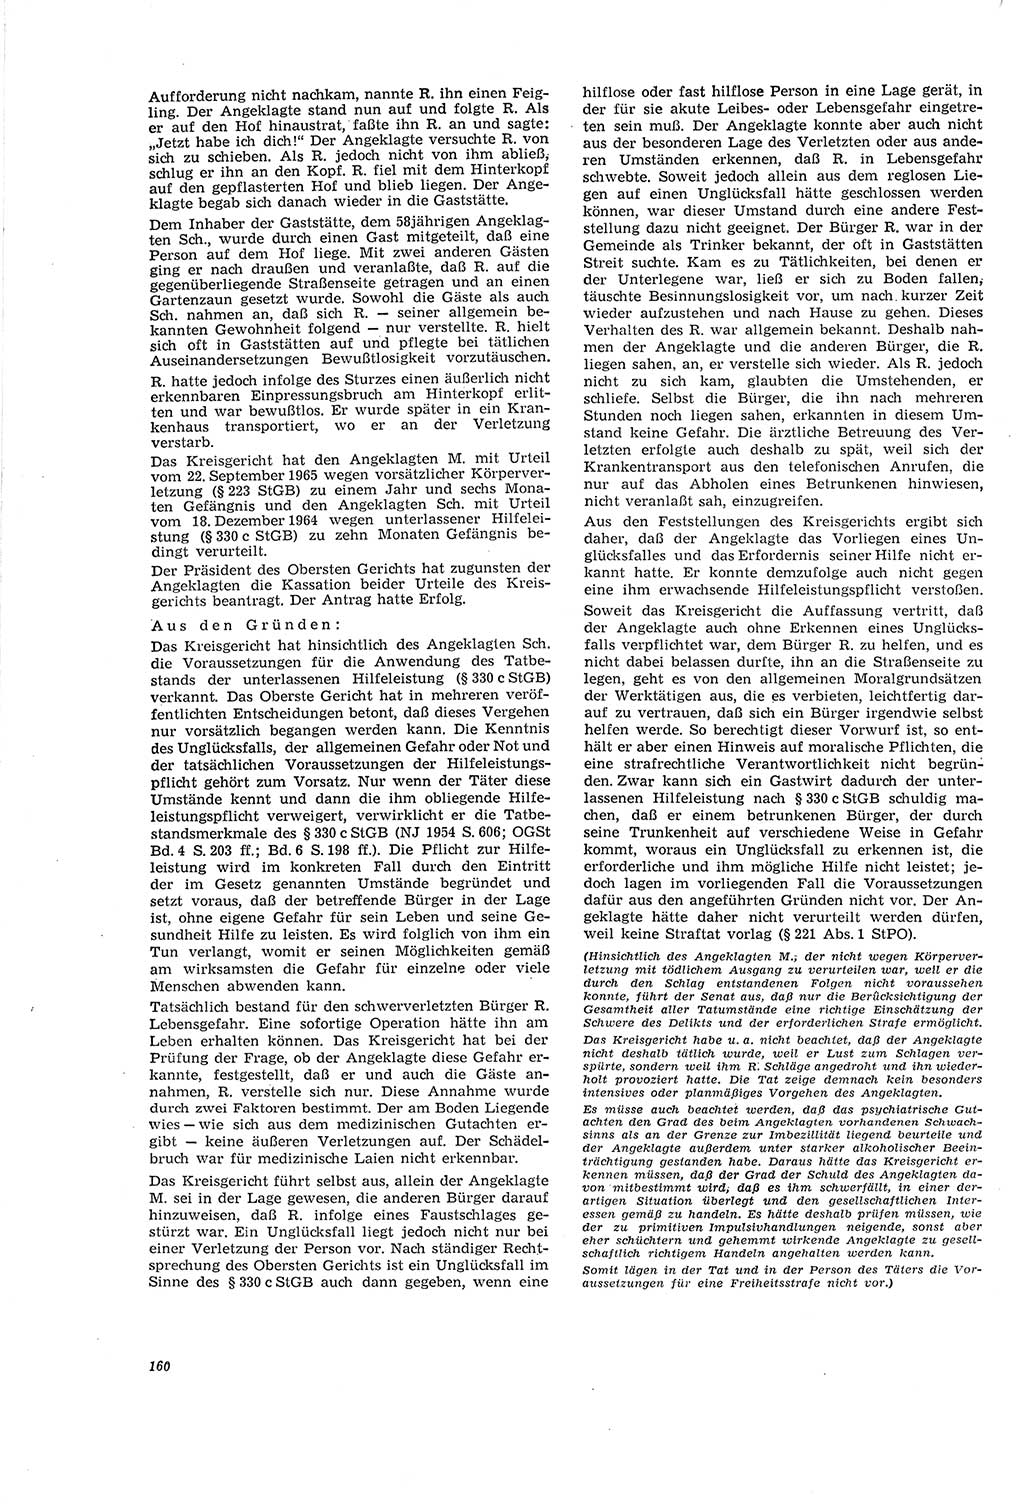 Neue Justiz (NJ), Zeitschrift für Recht und Rechtswissenschaft [Deutsche Demokratische Republik (DDR)], 20. Jahrgang 1966, Seite 160 (NJ DDR 1966, S. 160)